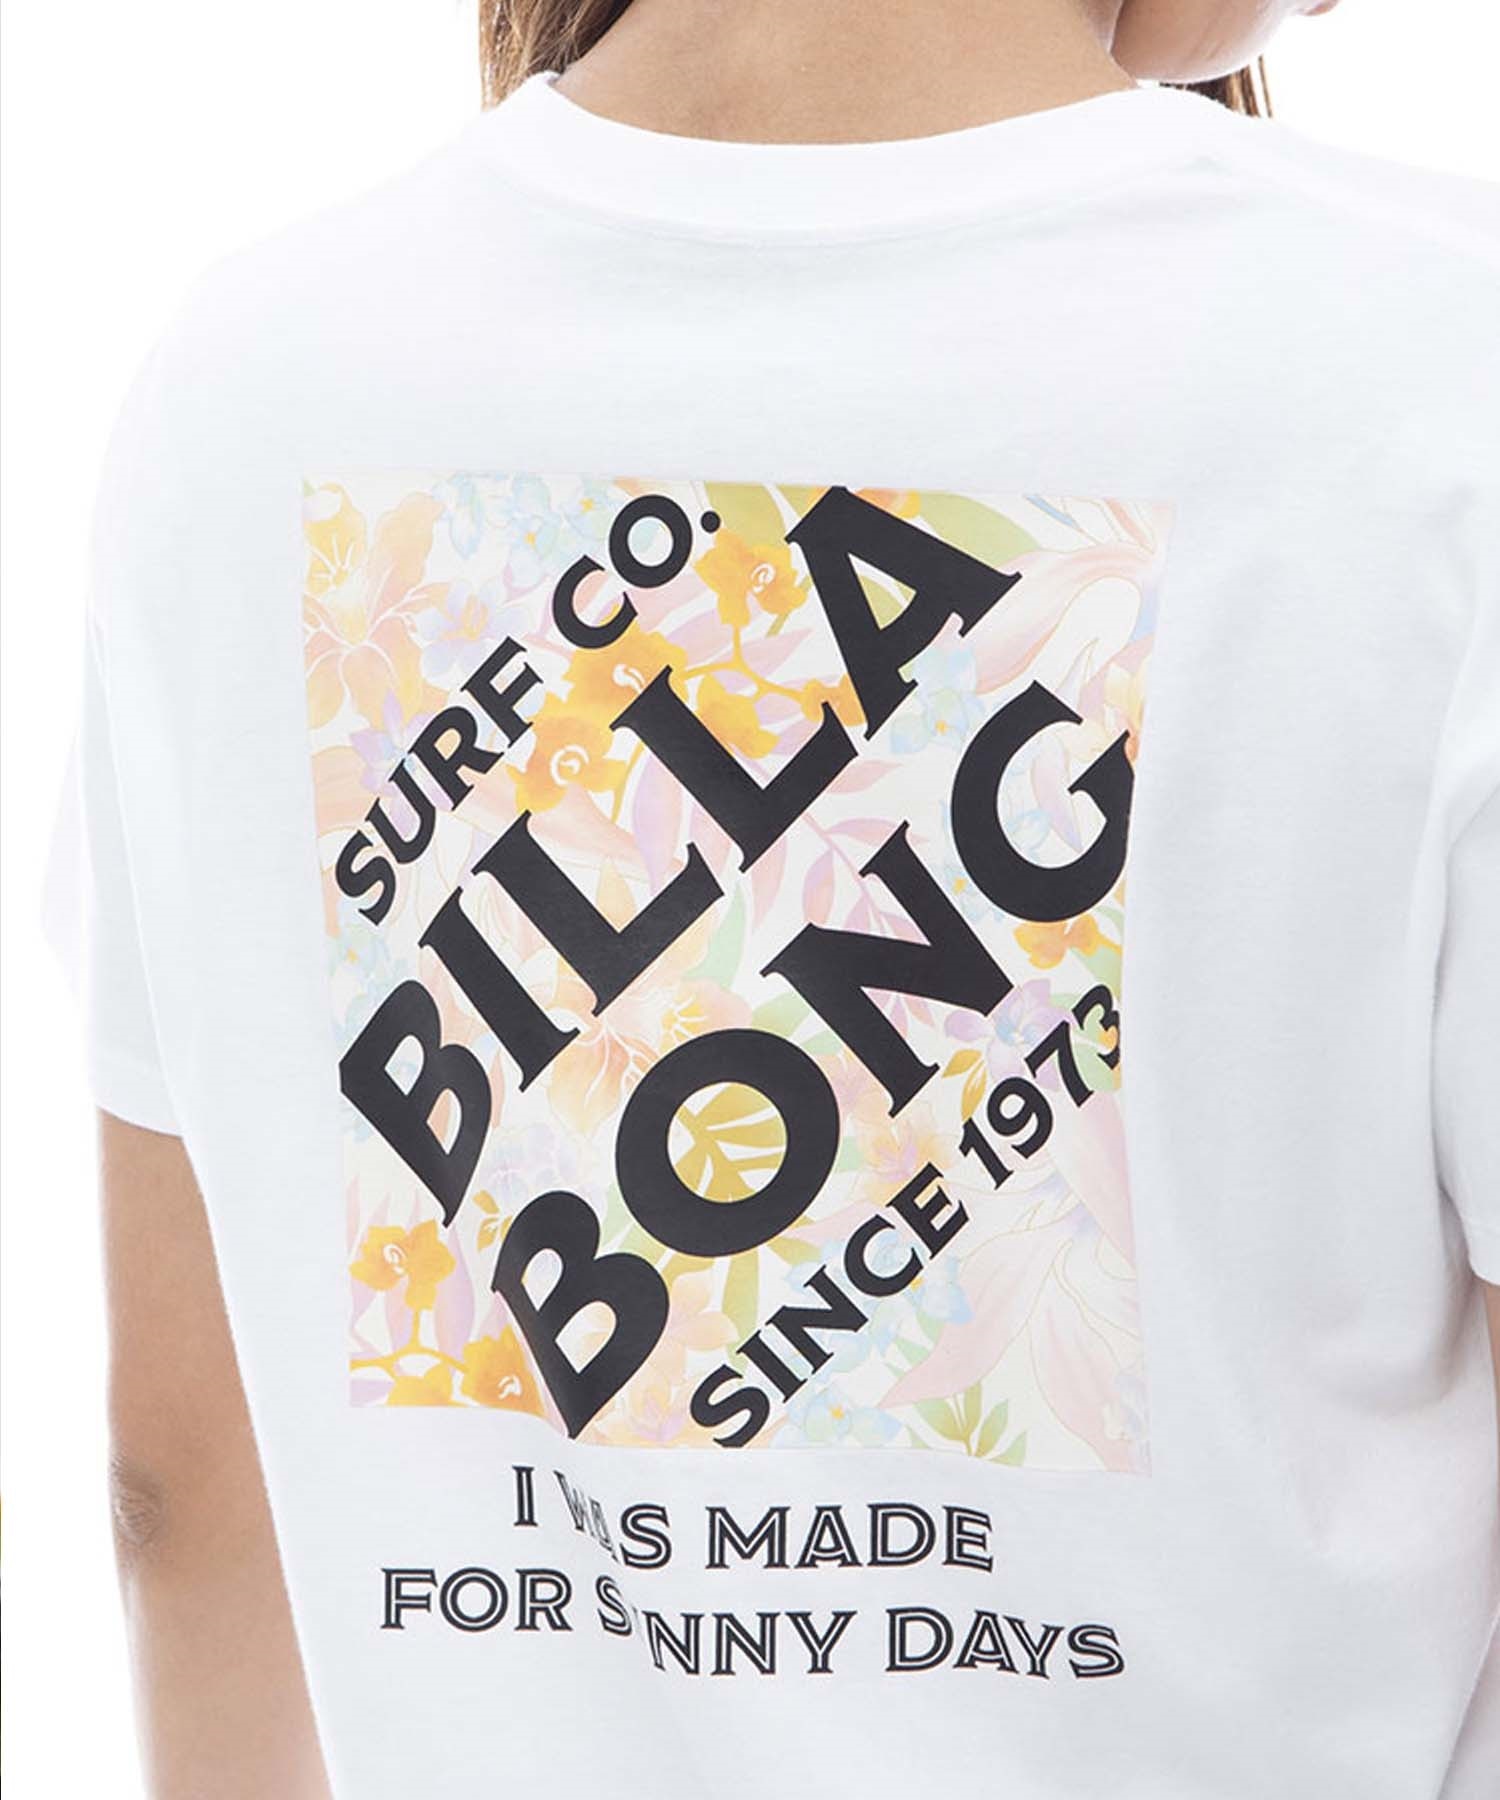 【クーポン対象】BILLABONG ビラボン SQUARE LOGO TEE レディース 半袖Tシャツ ブランドロゴ ボーイフィット BE013-201(BLK-M)